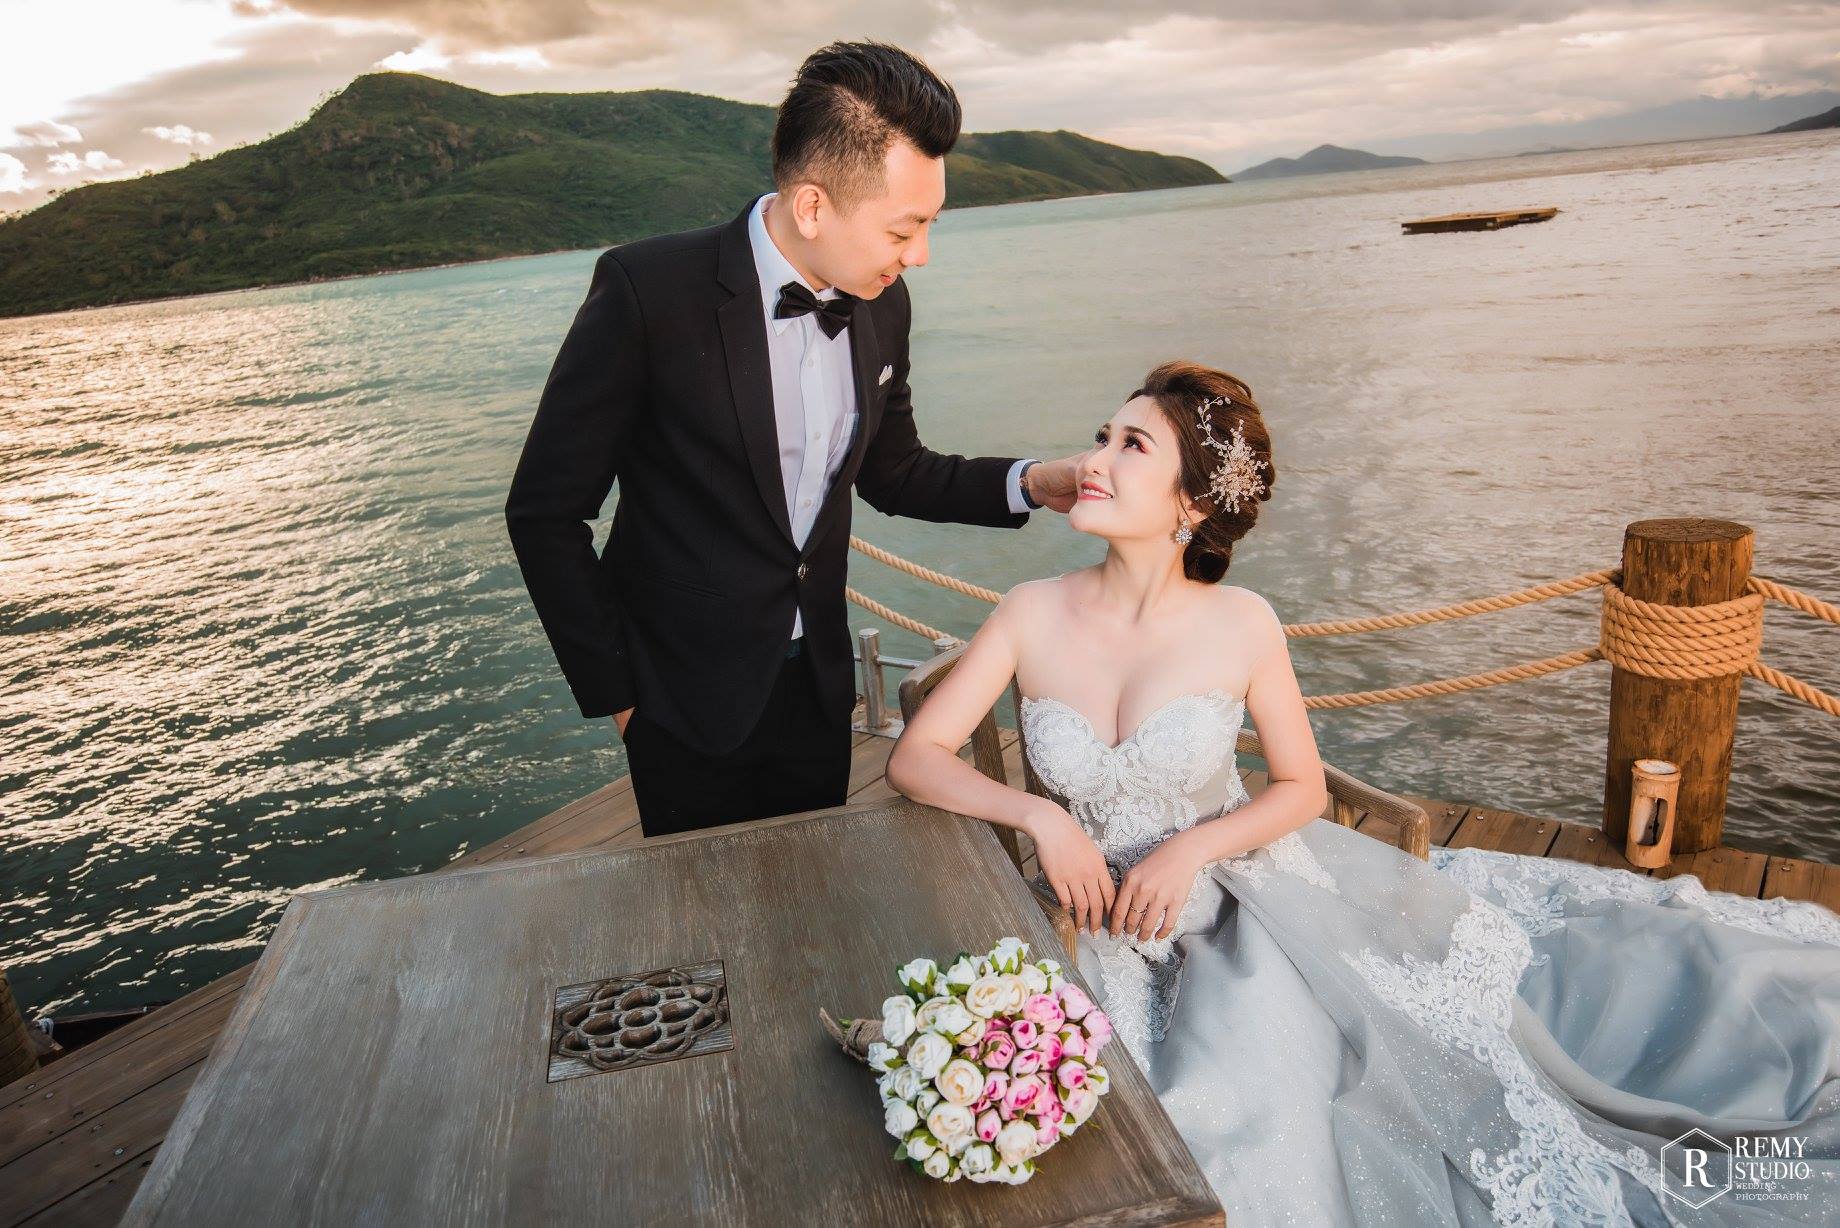 Chụp ảnh cưới Six Sense Ninh Vân Bay Nha Trang là một trải nghiệm độc đáo và không thể bỏ qua cho các cặp đôi muốn lưu giữ những khoảnh khắc của cuộc đời. Không gian nghỉ dưỡng xinh đẹp với bãi biển tuyệt đẹp sẽ mang đến cho bạn những bức ảnh cưới đẹp như mơ.